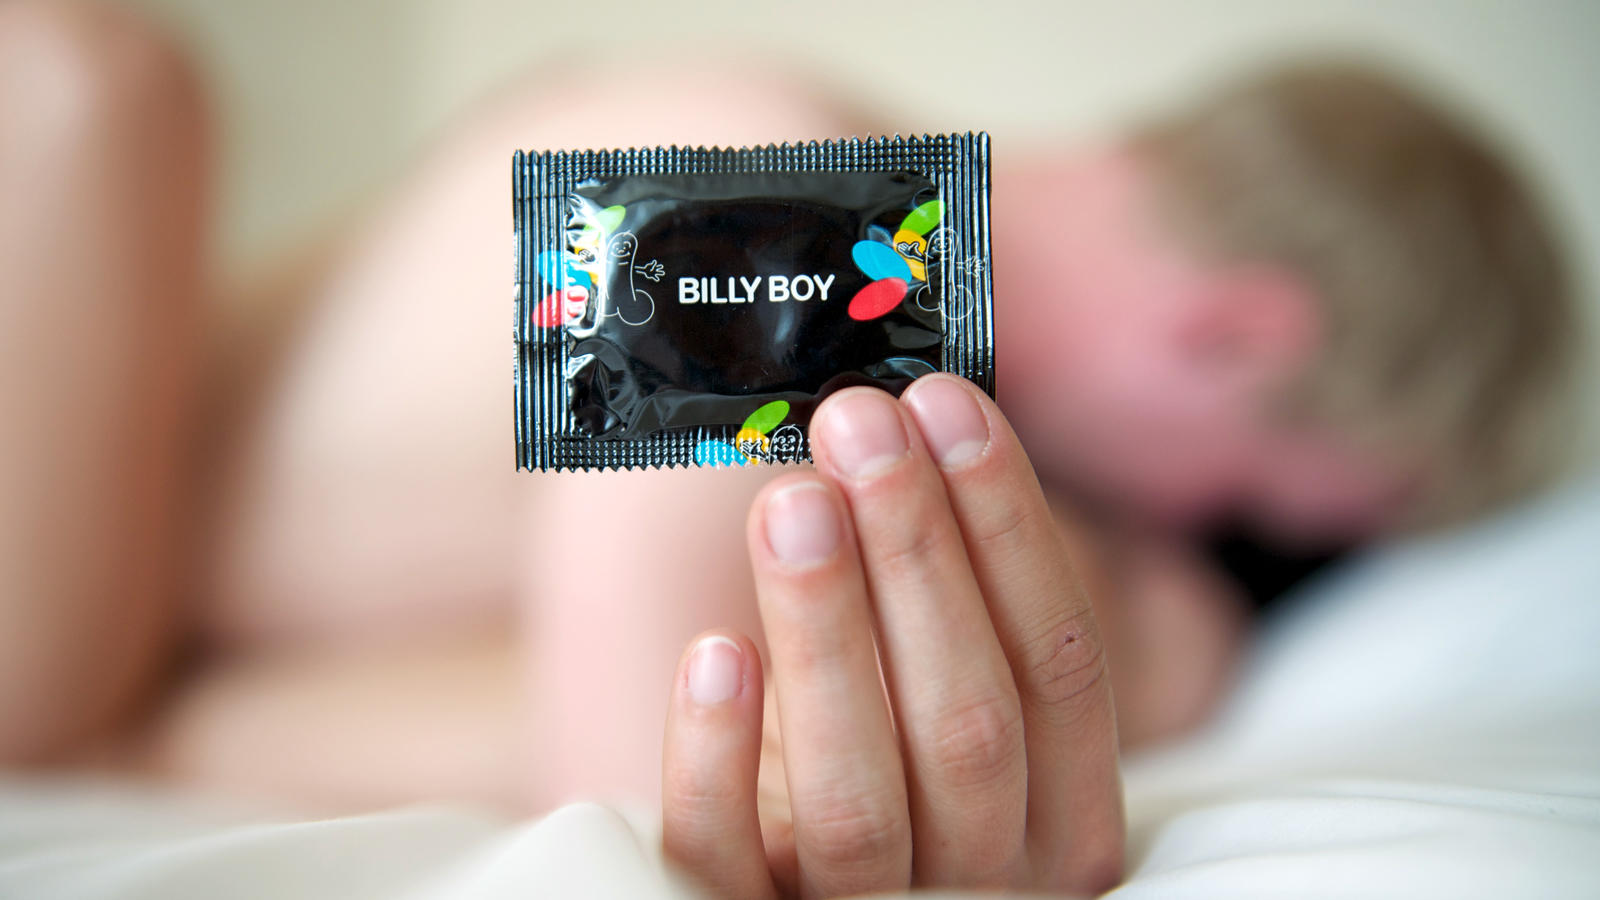 Kondom ohne treasniesneezic: Pille